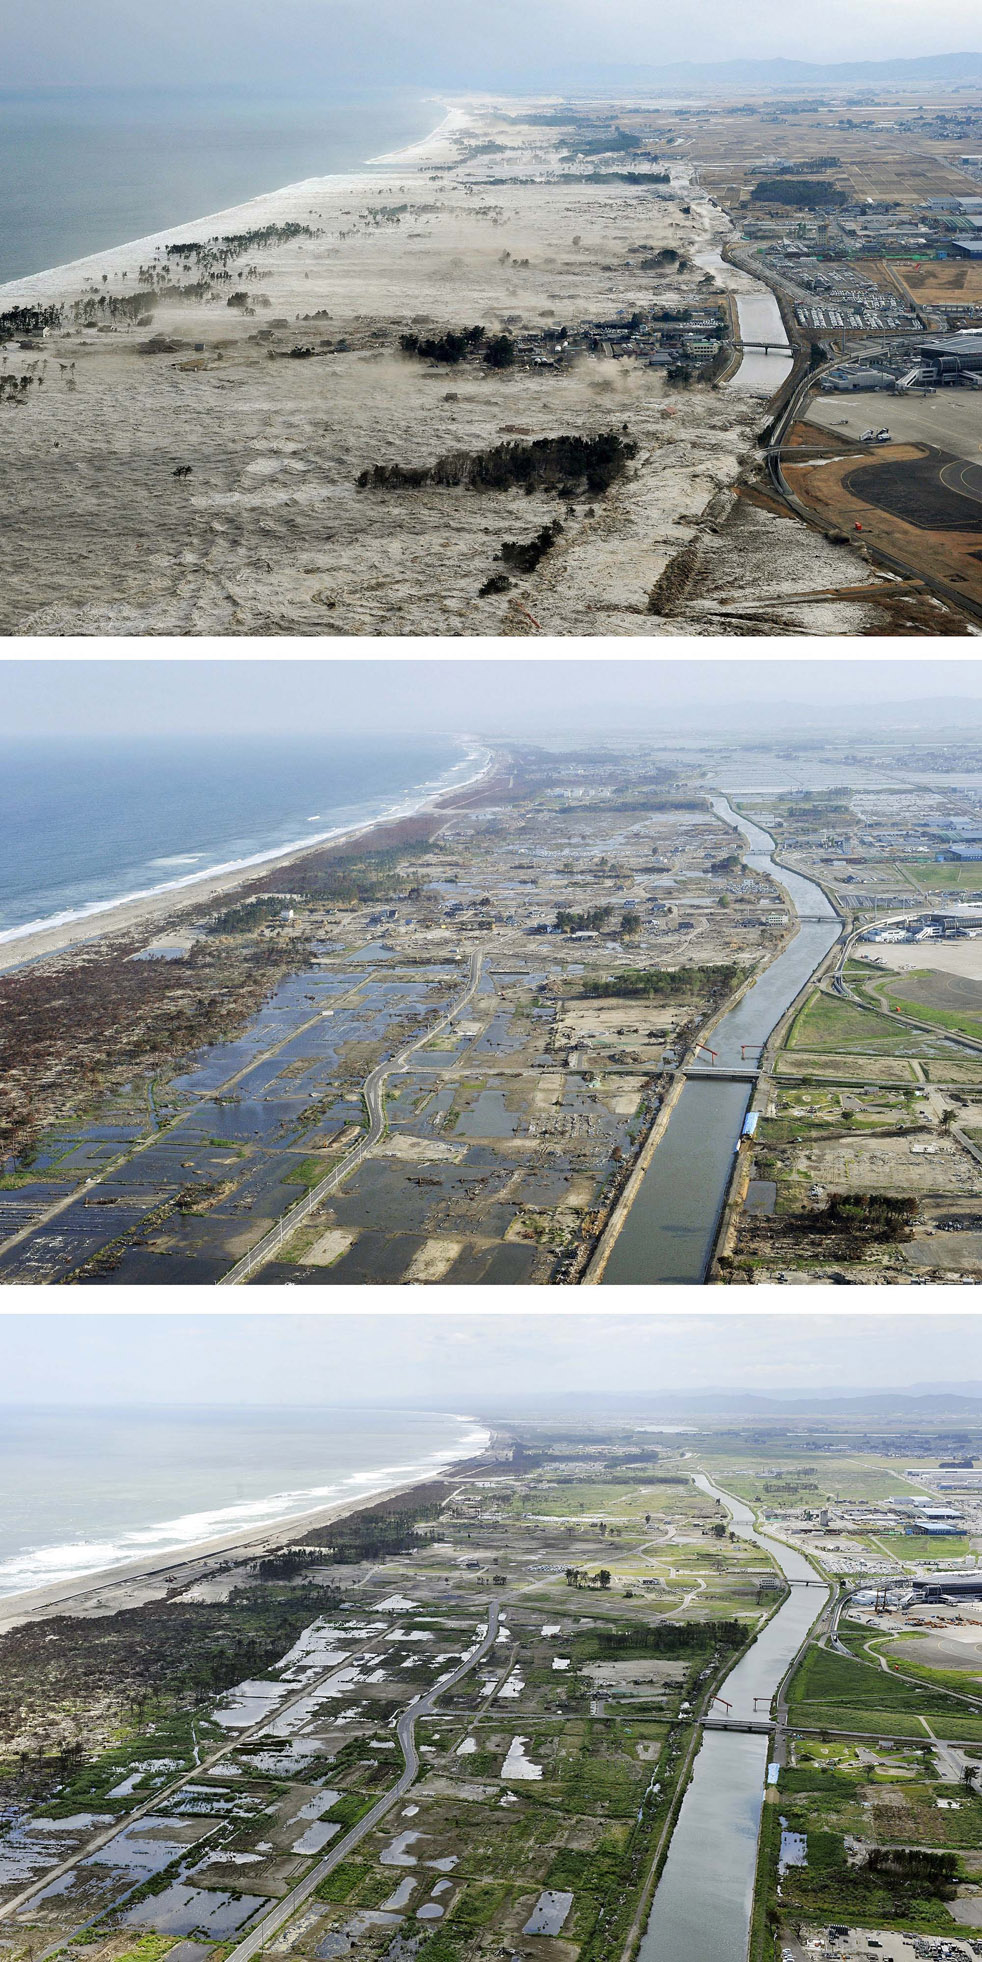  Iwanuma, префектура Мияги, 11 марта, 3 июня, 6 сентября. Прибрежная территория начала осушаться, а на сухих участках уже выросла трава.